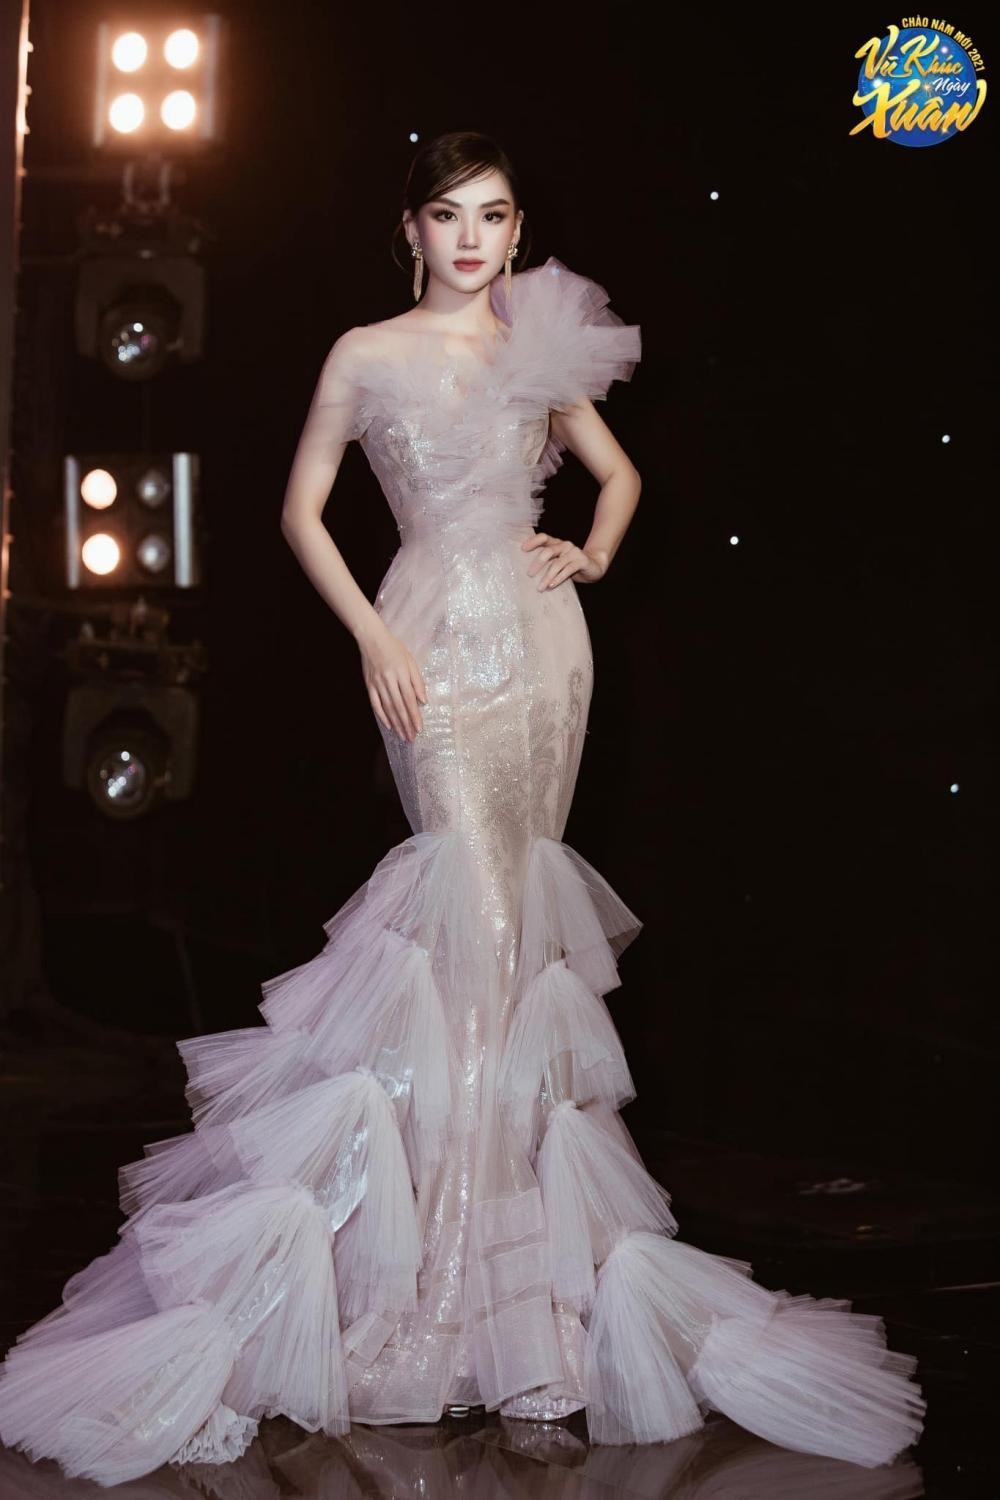 Hoa hậu Mai Phương cực khéo chọn đầm dạ hội, thiết kế nào cũng tôn dáng tuyệt đối - Ảnh 9.